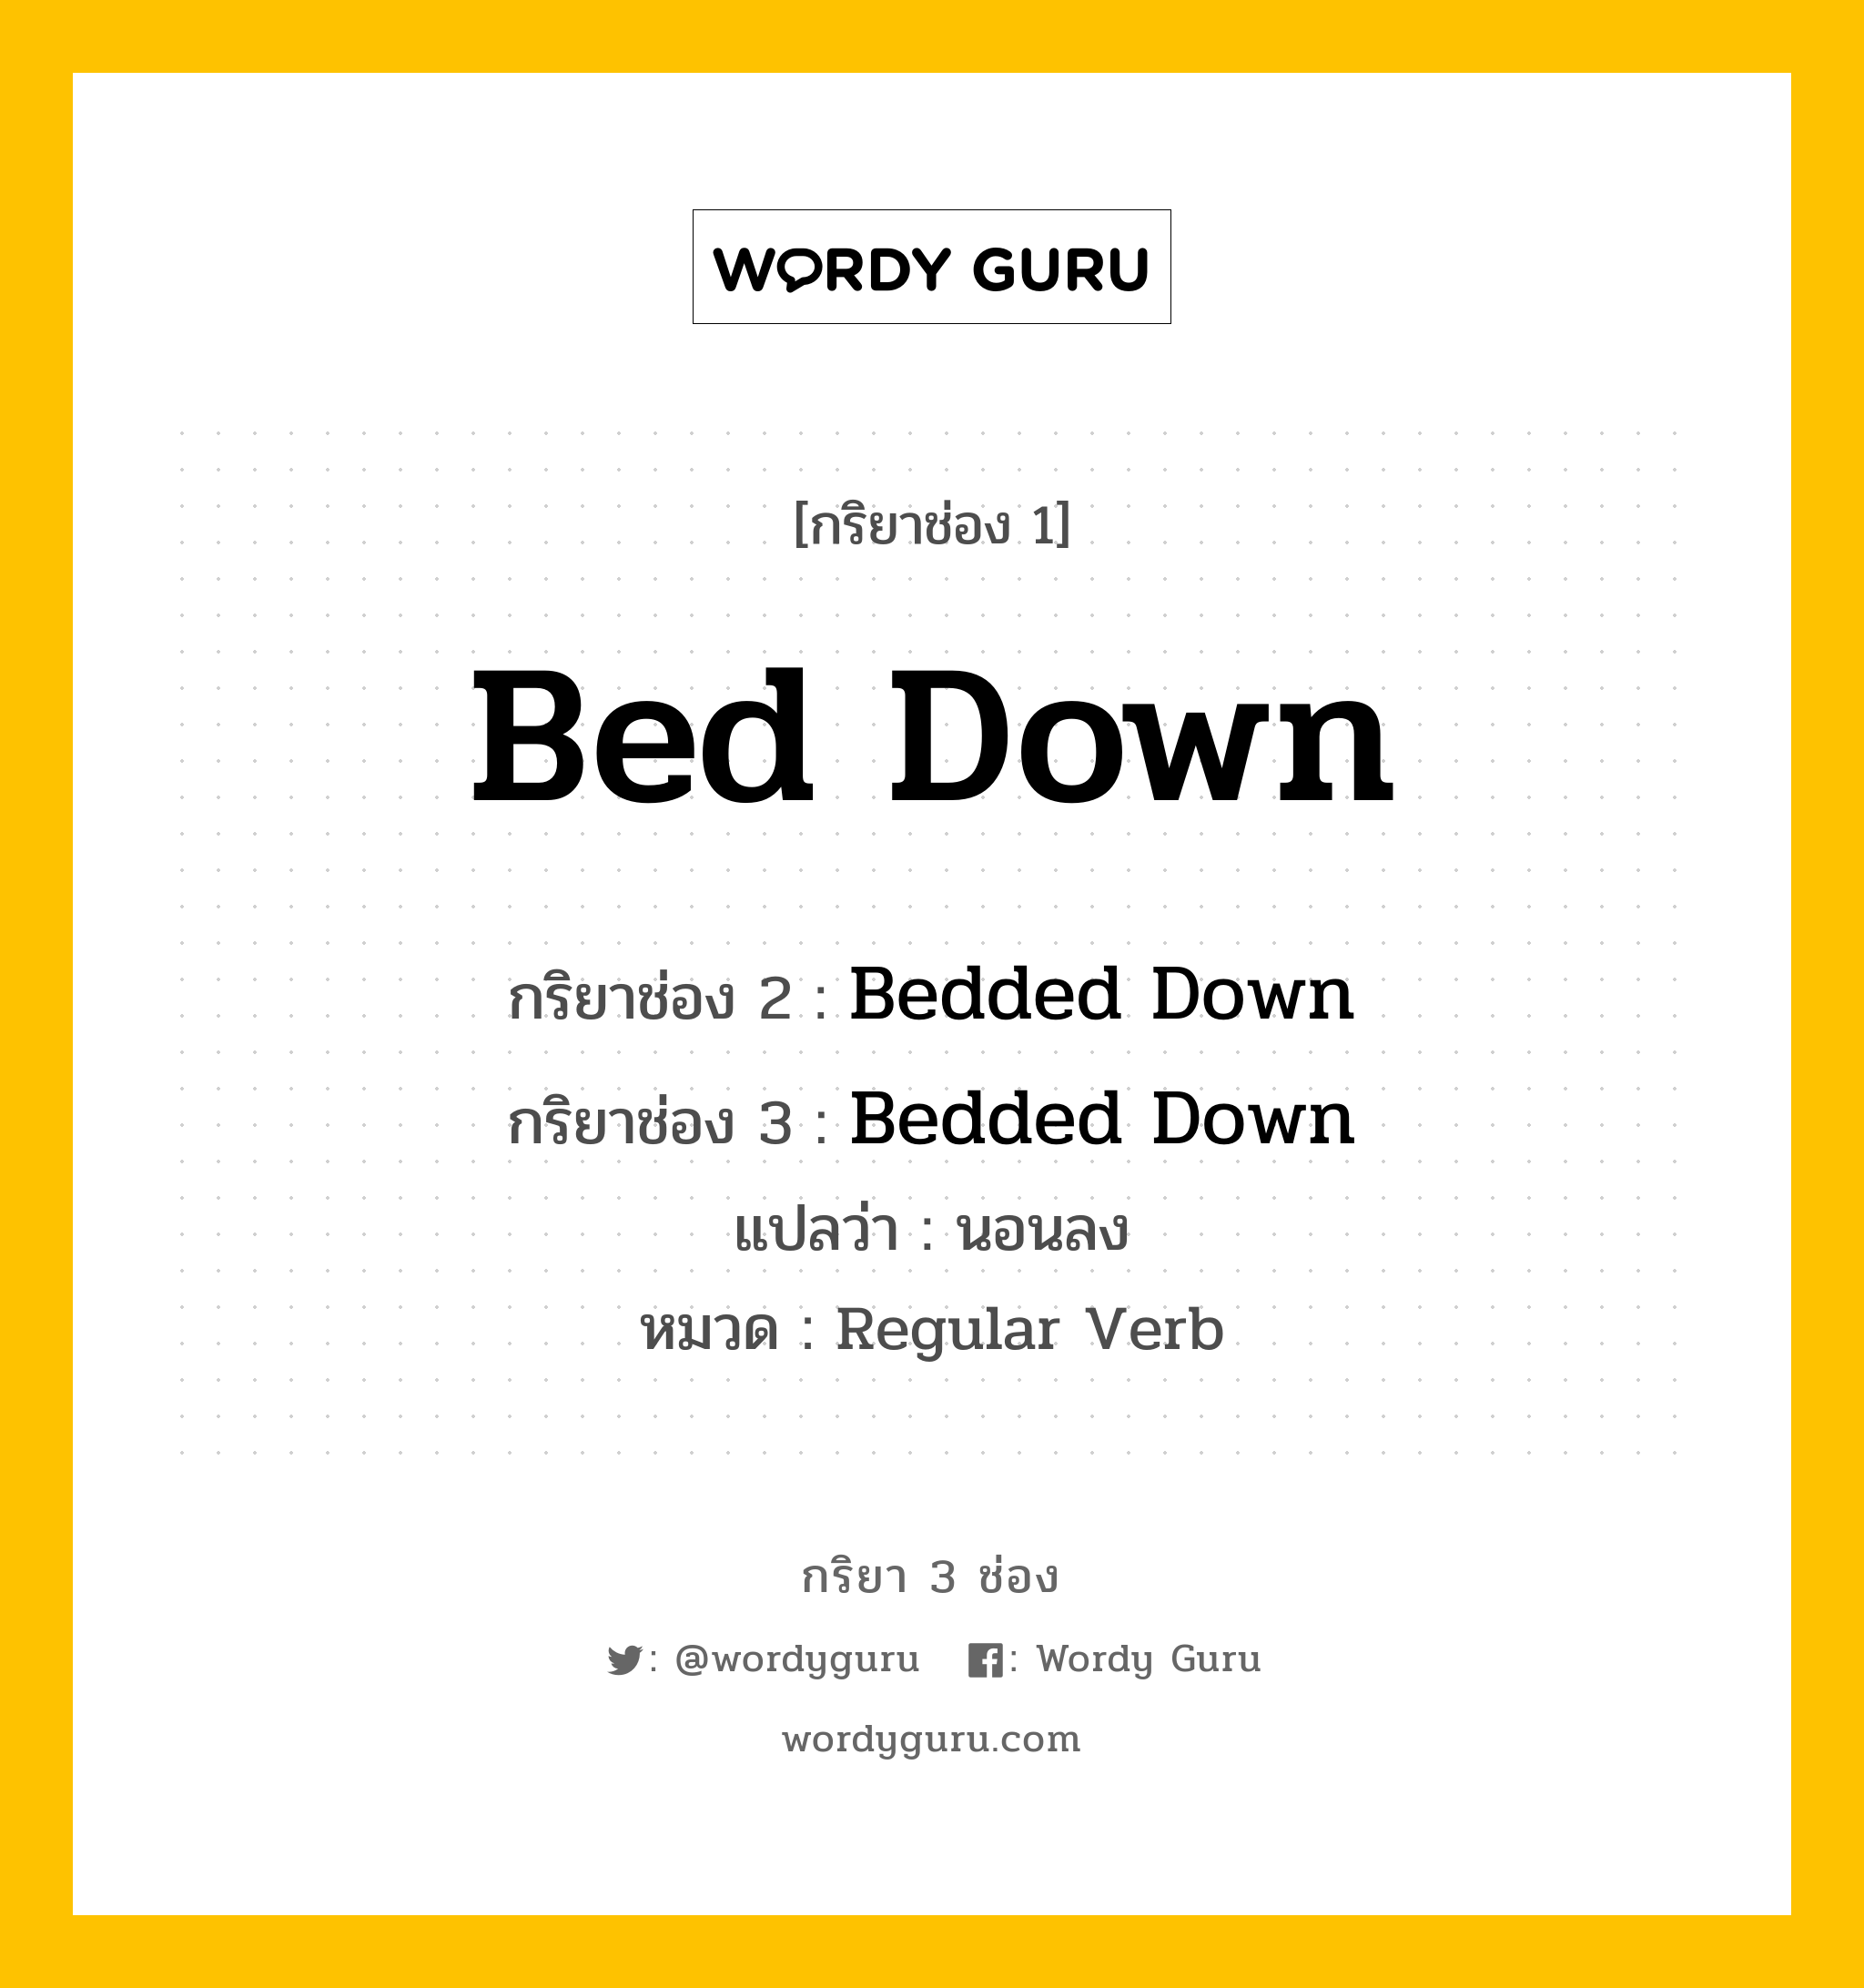 กริยา 3 ช่อง ของ Bed Down คืออะไร? มาดูคำอ่าน คำแปลกันเลย, กริยาช่อง 1 Bed Down กริยาช่อง 2 Bedded Down กริยาช่อง 3 Bedded Down แปลว่า นอนลง หมวด Regular Verb หมวด Regular Verb